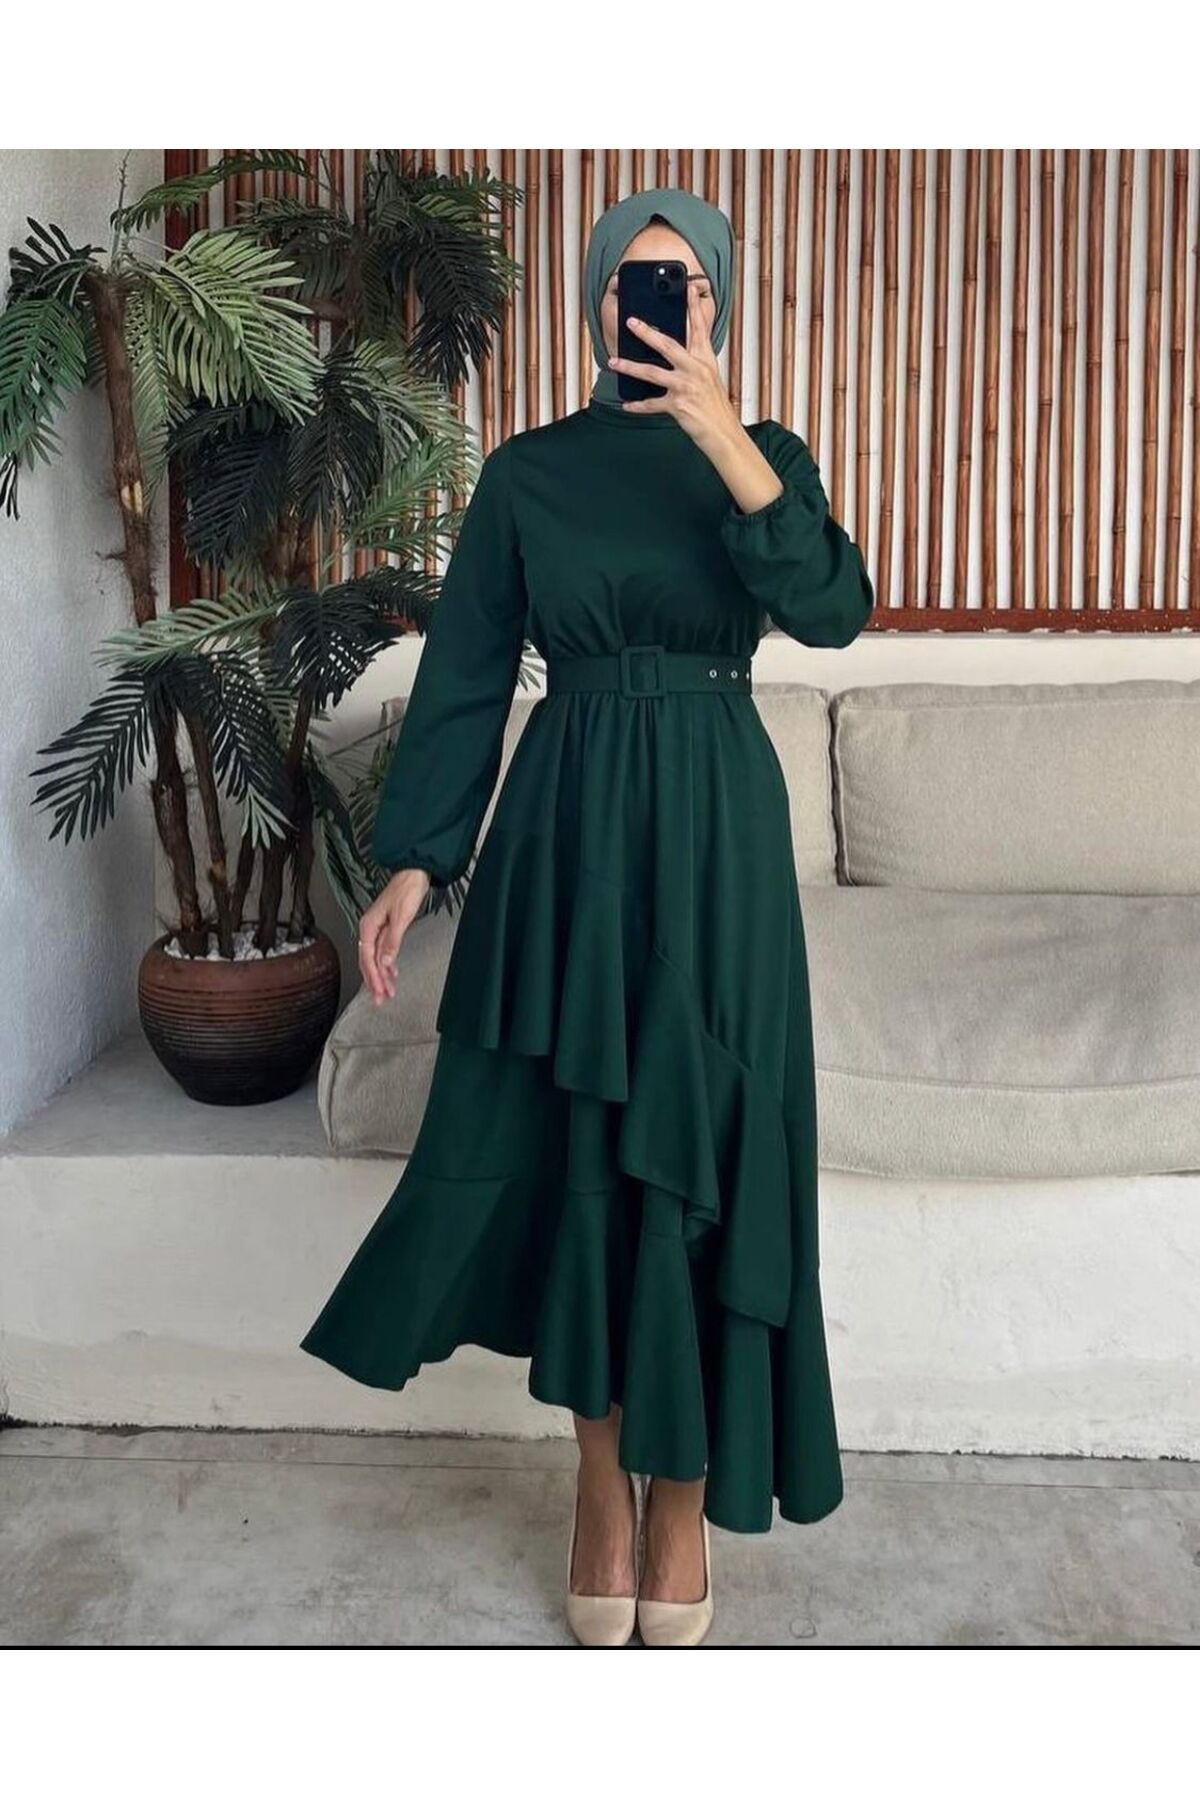 PIRLANTA GİYİM Kadın Yeşil Etek Fırfırlı Krep Elbise - 291